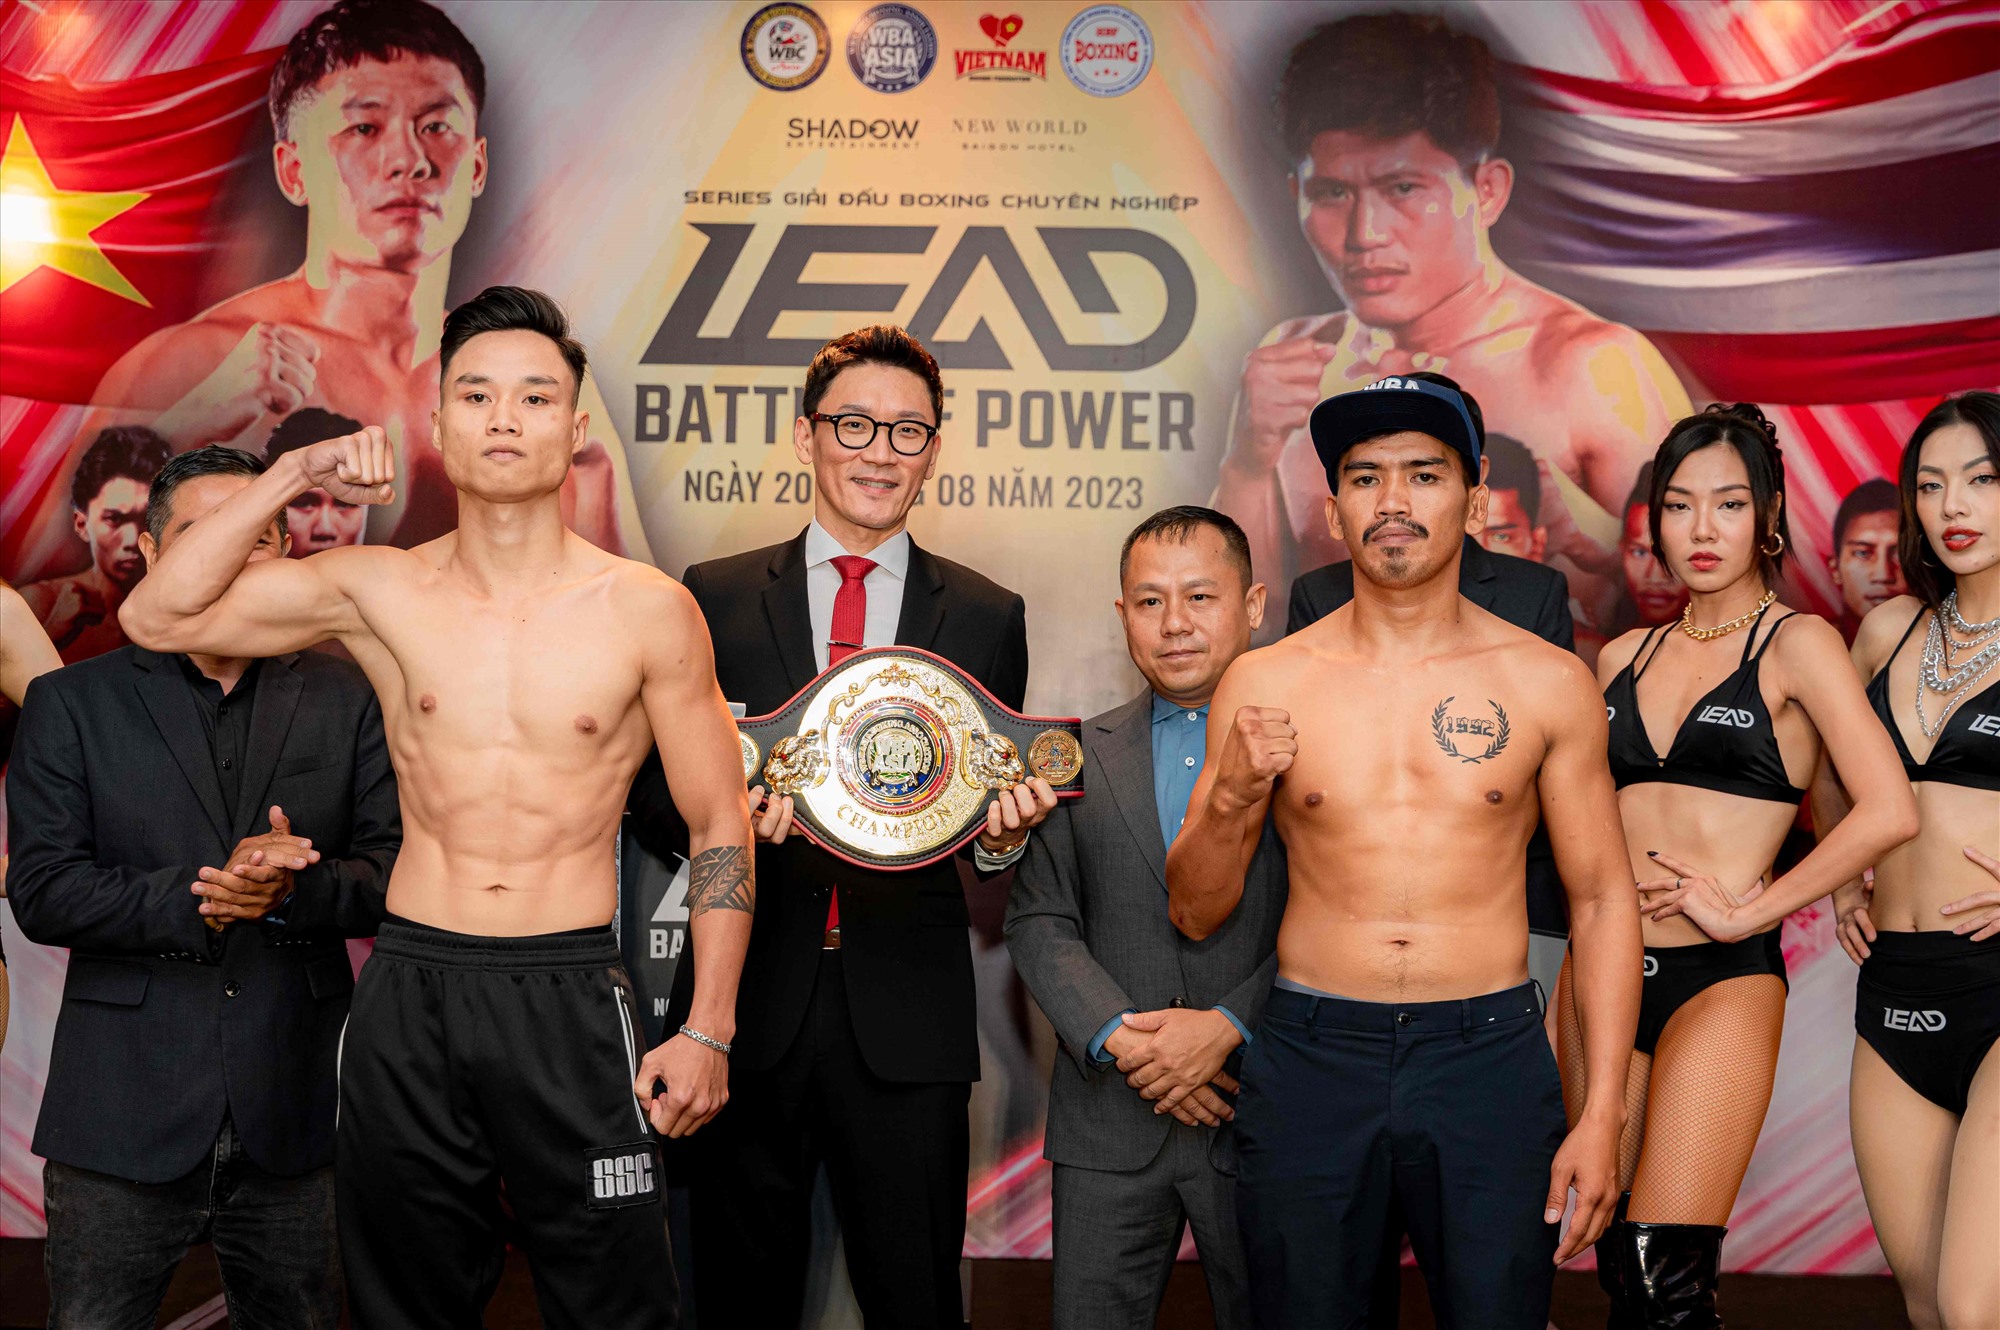 Võ sĩ boxing Võ Hồng Đạt (trái) tự tin trước trận tranh đai WBA châu Á hạng nhẹ vào tối 20.8. Ảnh: Hương Nguyễn